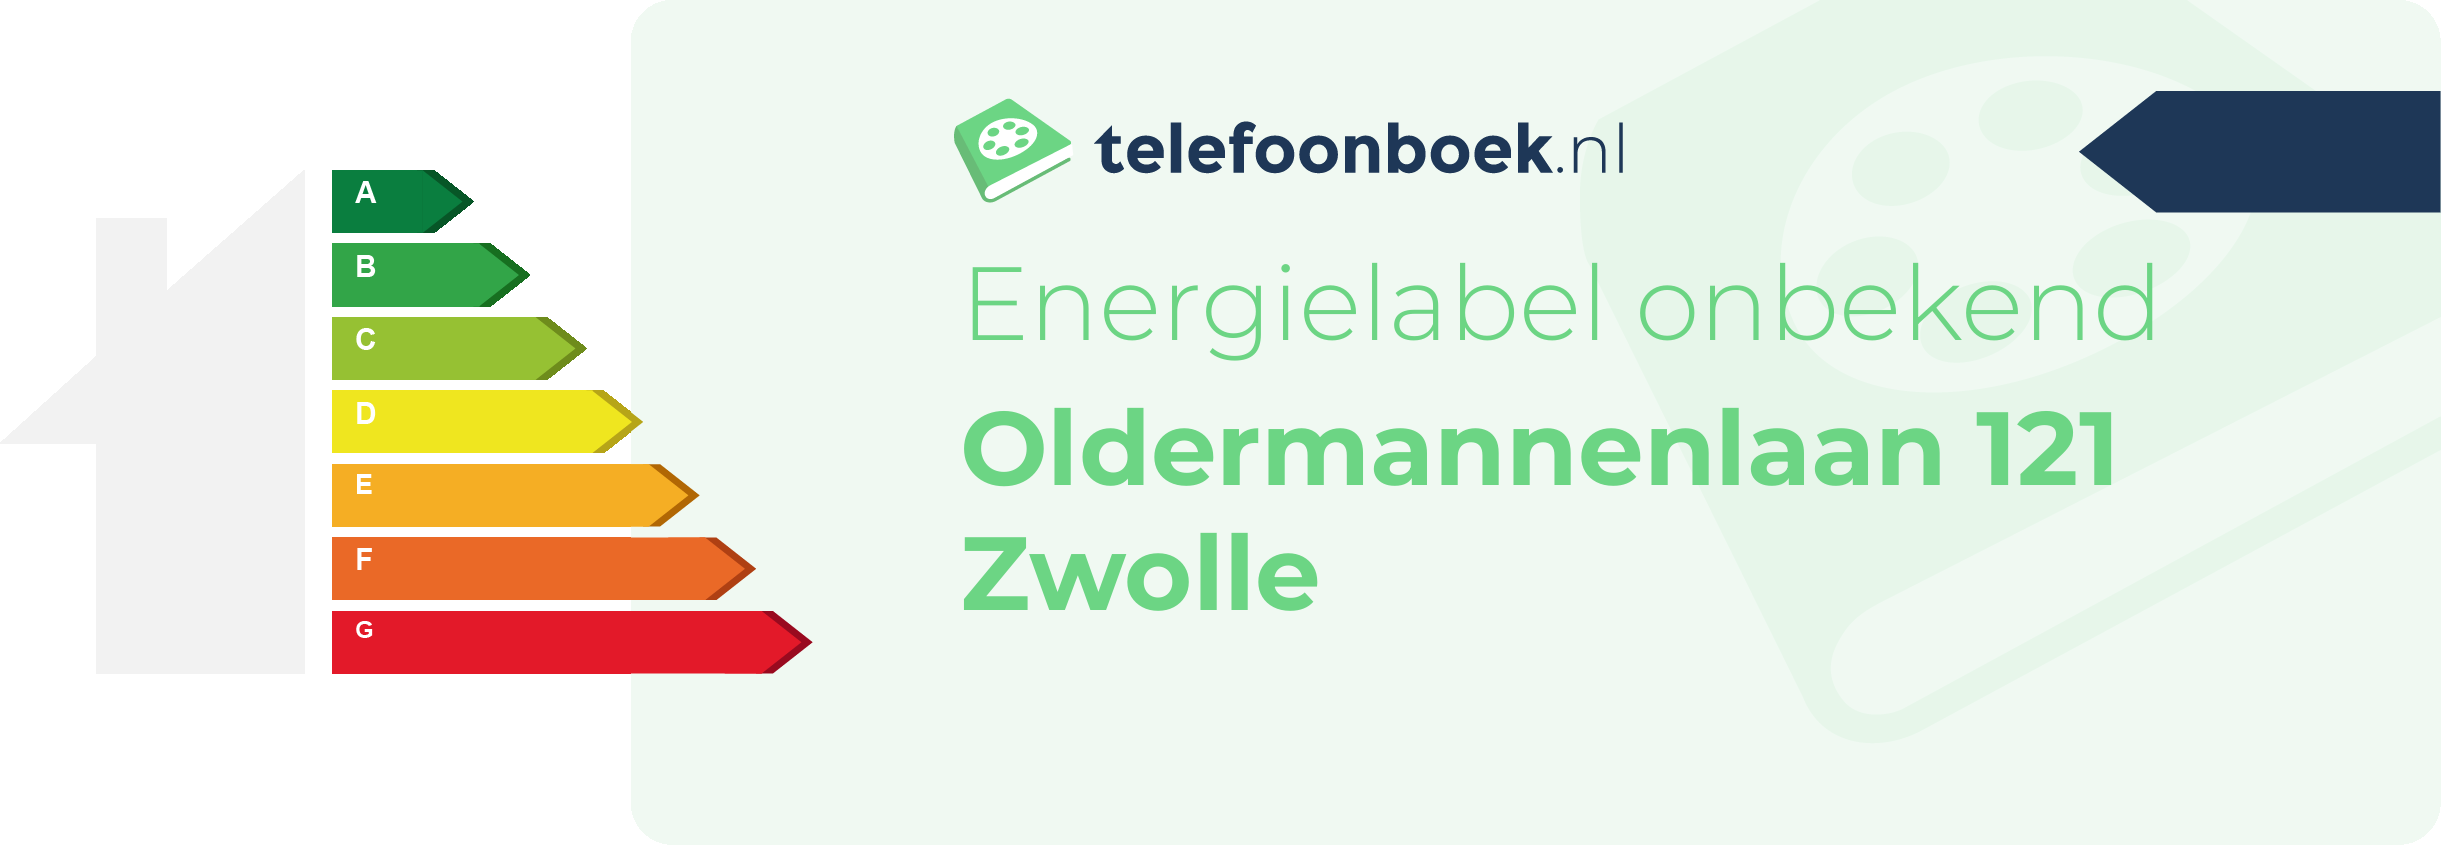 Energielabel Oldermannenlaan 121 Zwolle